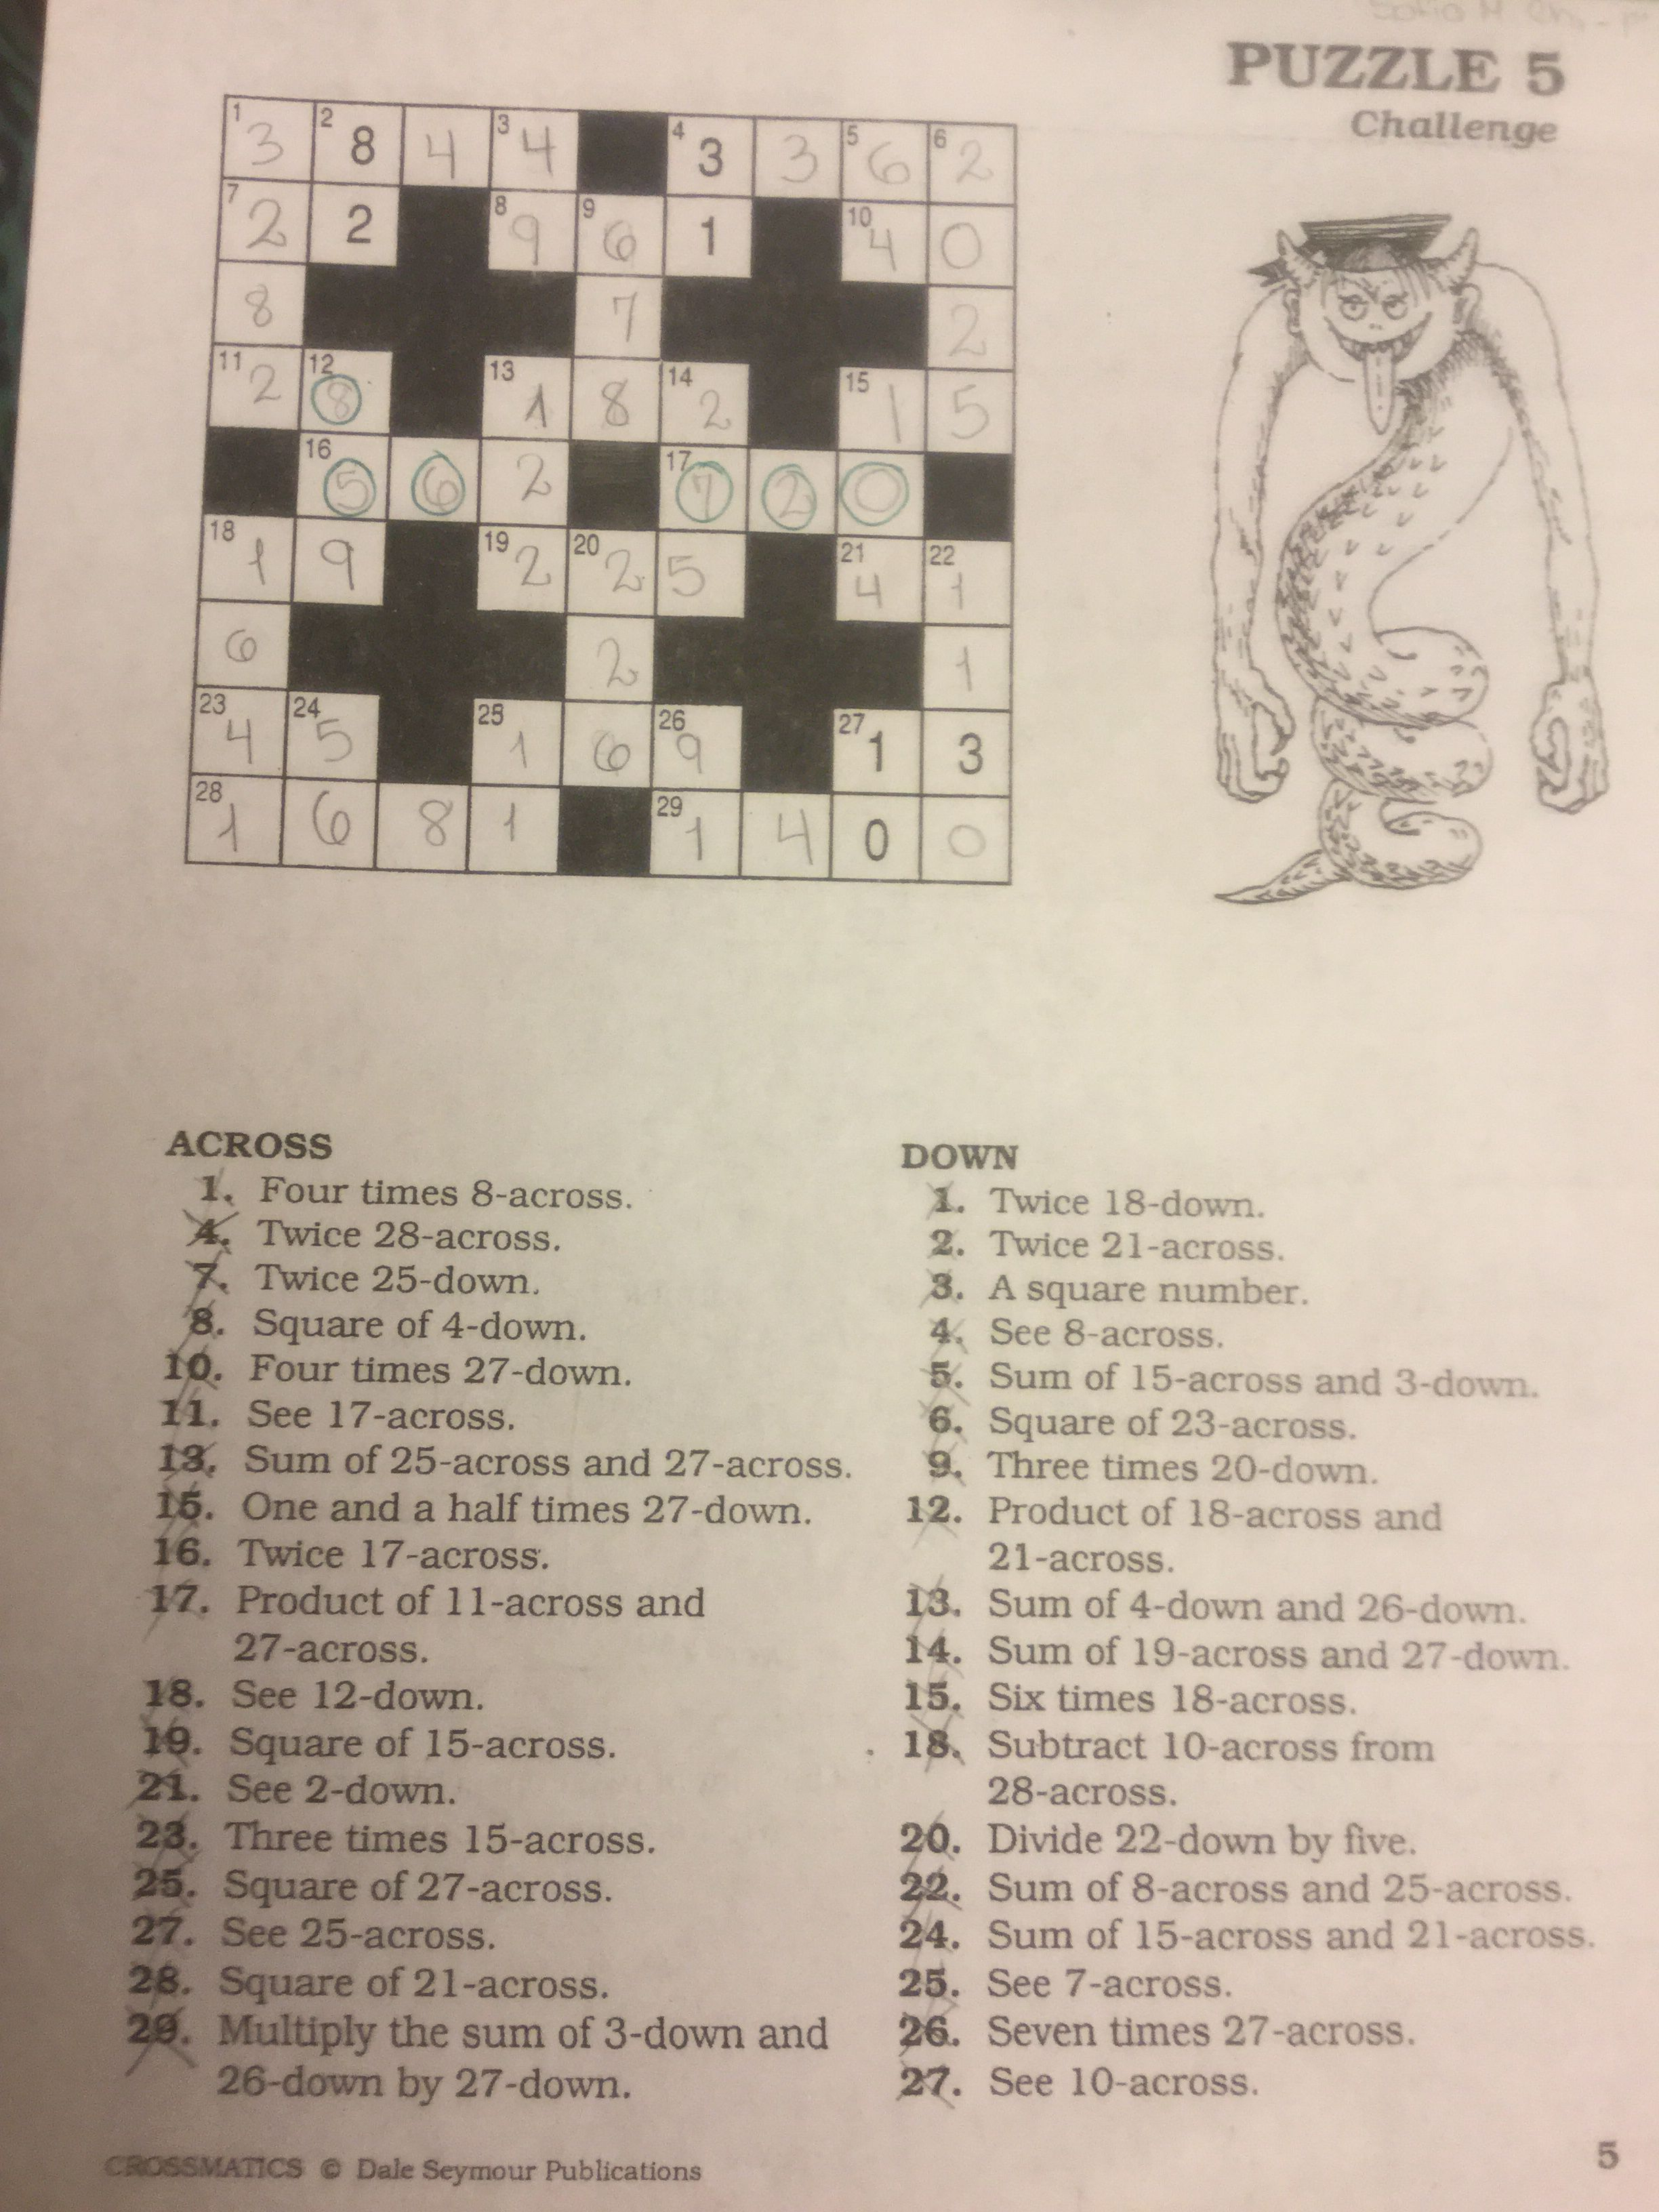 Puzzle #5 | Crossmatics ~ Dale Seymour Publications | Puzzle - Free Printable Crossword Puzzle #5